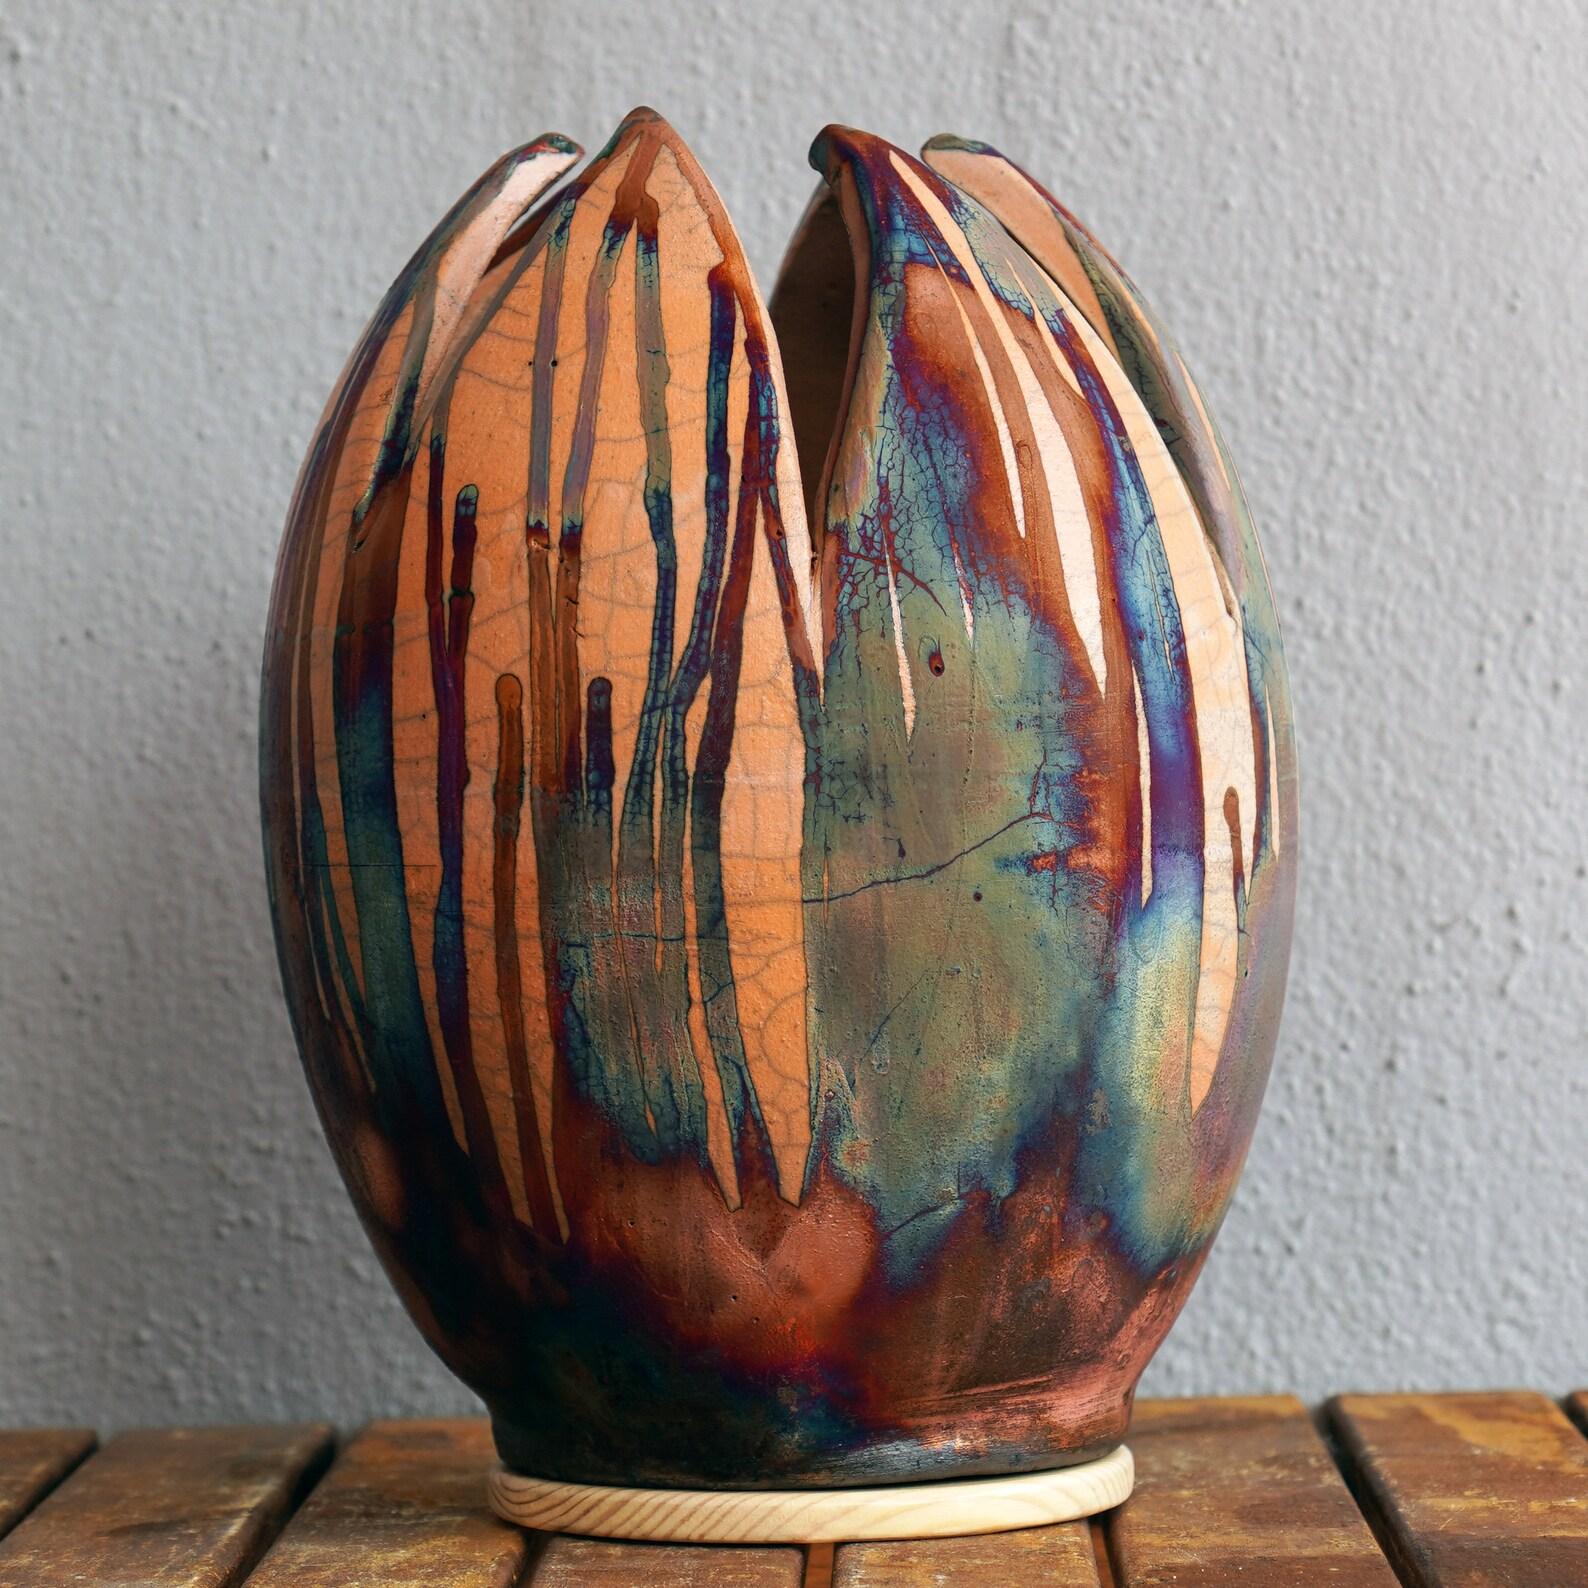 IL S'AGIT D'UNE PRÉCOMMANDE

Je suis fière de vous présenter la dernière forme de vase de ma série artistique : le vase à fleurs.

Avec une forme inspirée de la fleur de tulipe, le vase RAAQUU Flower exprime un merveilleux éclat arc-en-ciel sur un